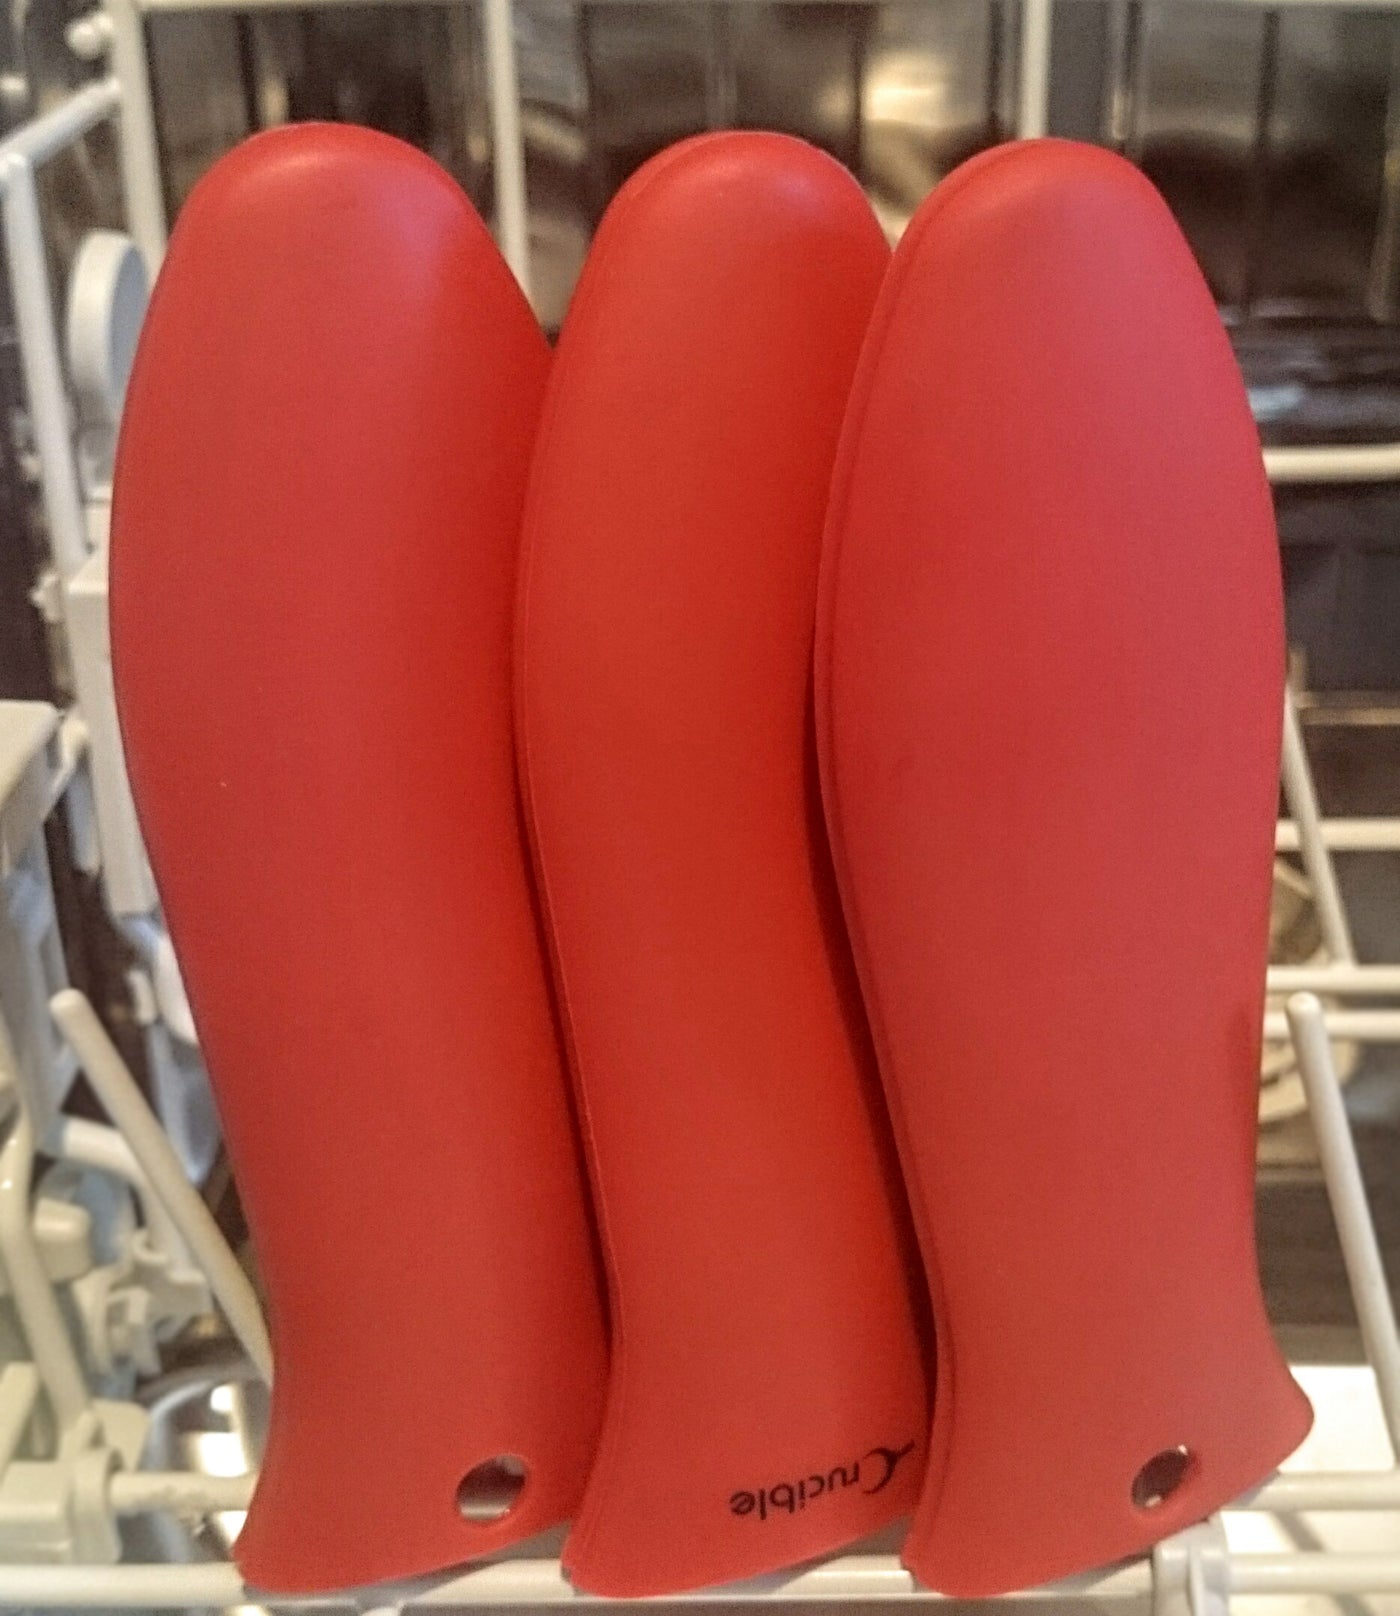 Suporte para alça quente de silicone + suporte auxiliar, pegador de panela (2 unidades vermelho) - punho de manga, capa de alça